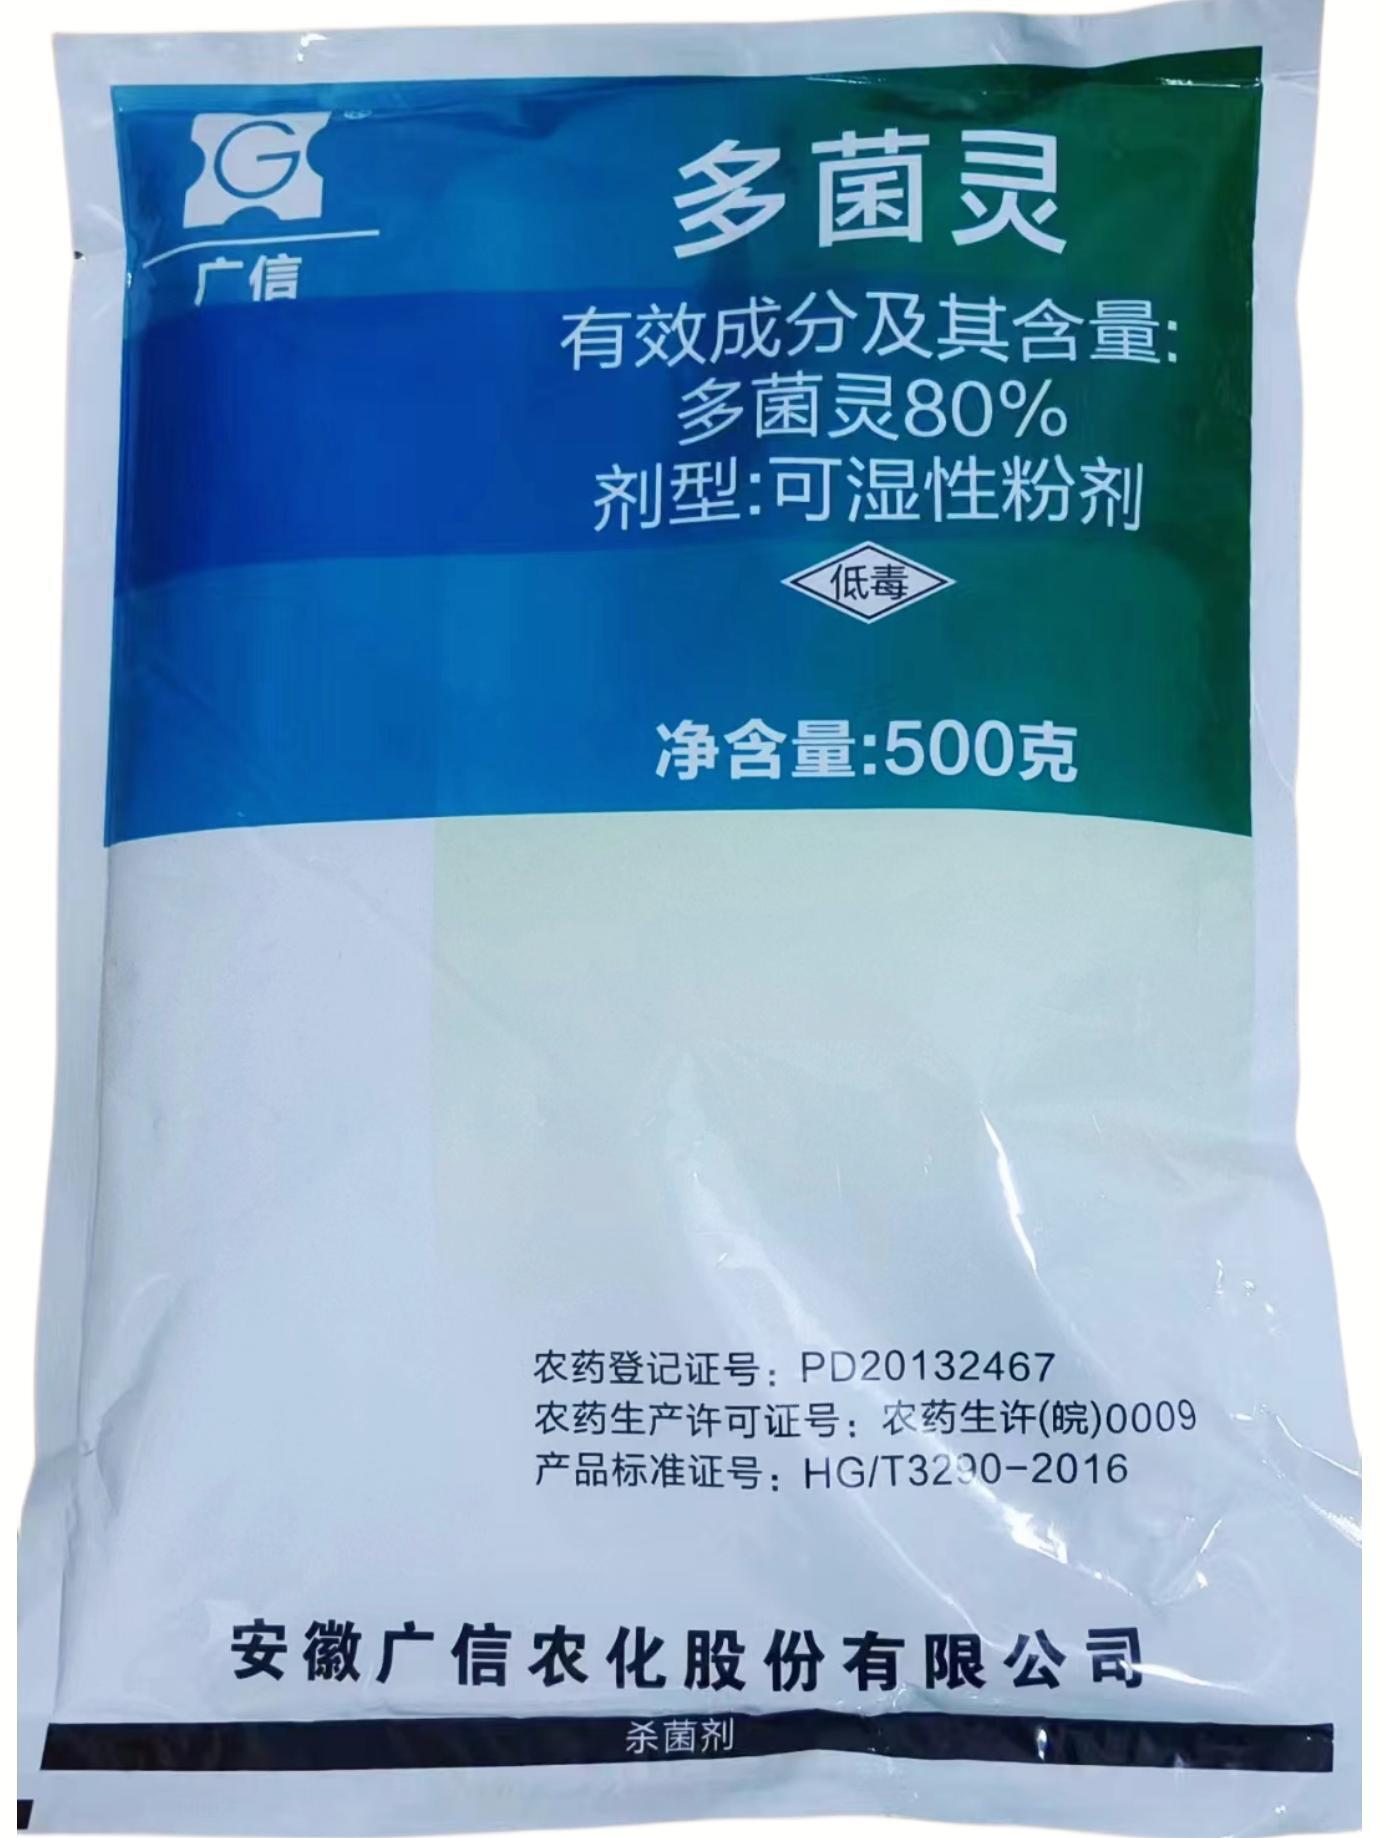 广信-80%多菌灵-可湿性粉剂